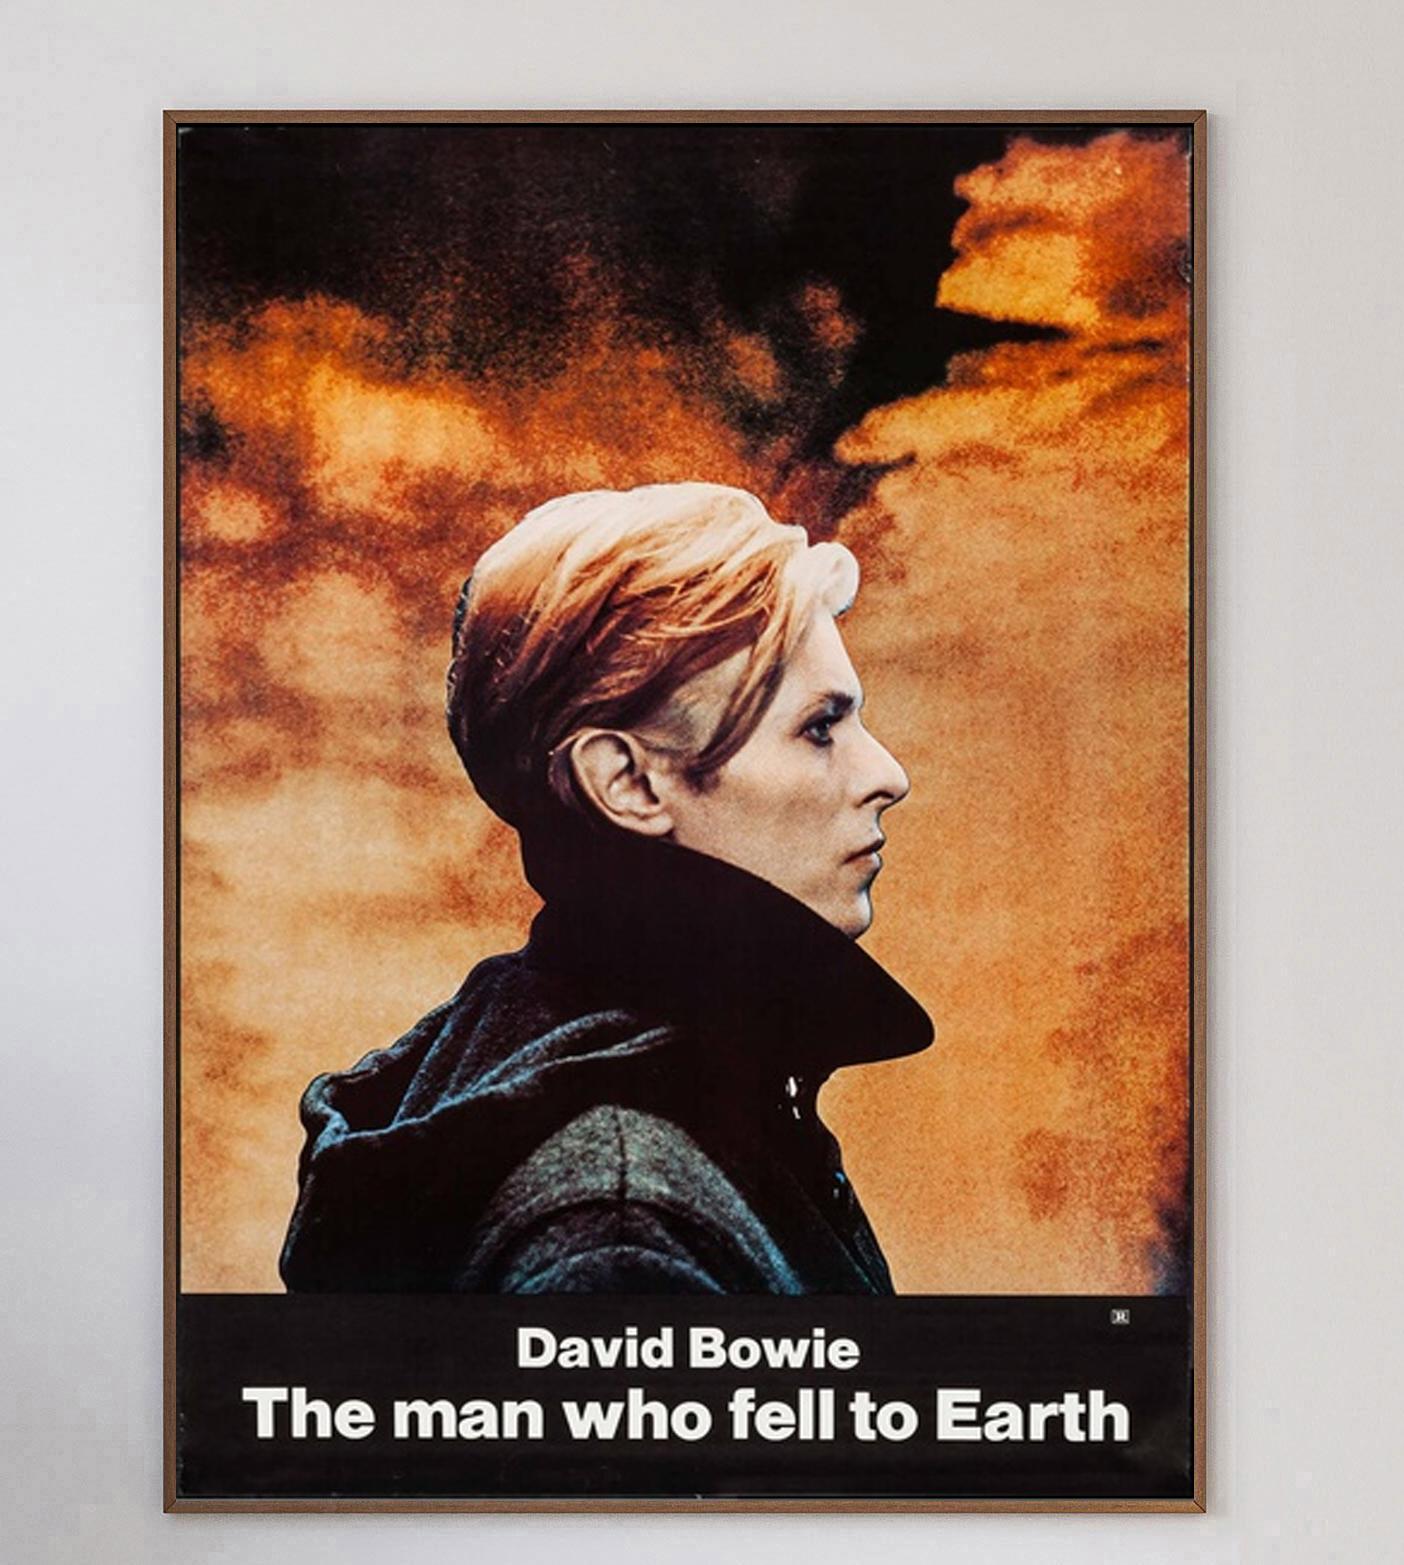 Der Film The Man Who Fell To Earth basiert auf dem gleichnamigen Roman von Walter Tevis und wurde 1976 veröffentlicht. Unter der Regie von Nicholas Reog war der Film der erste Kinoauftritt von David Bowie und hat bis heute eine große